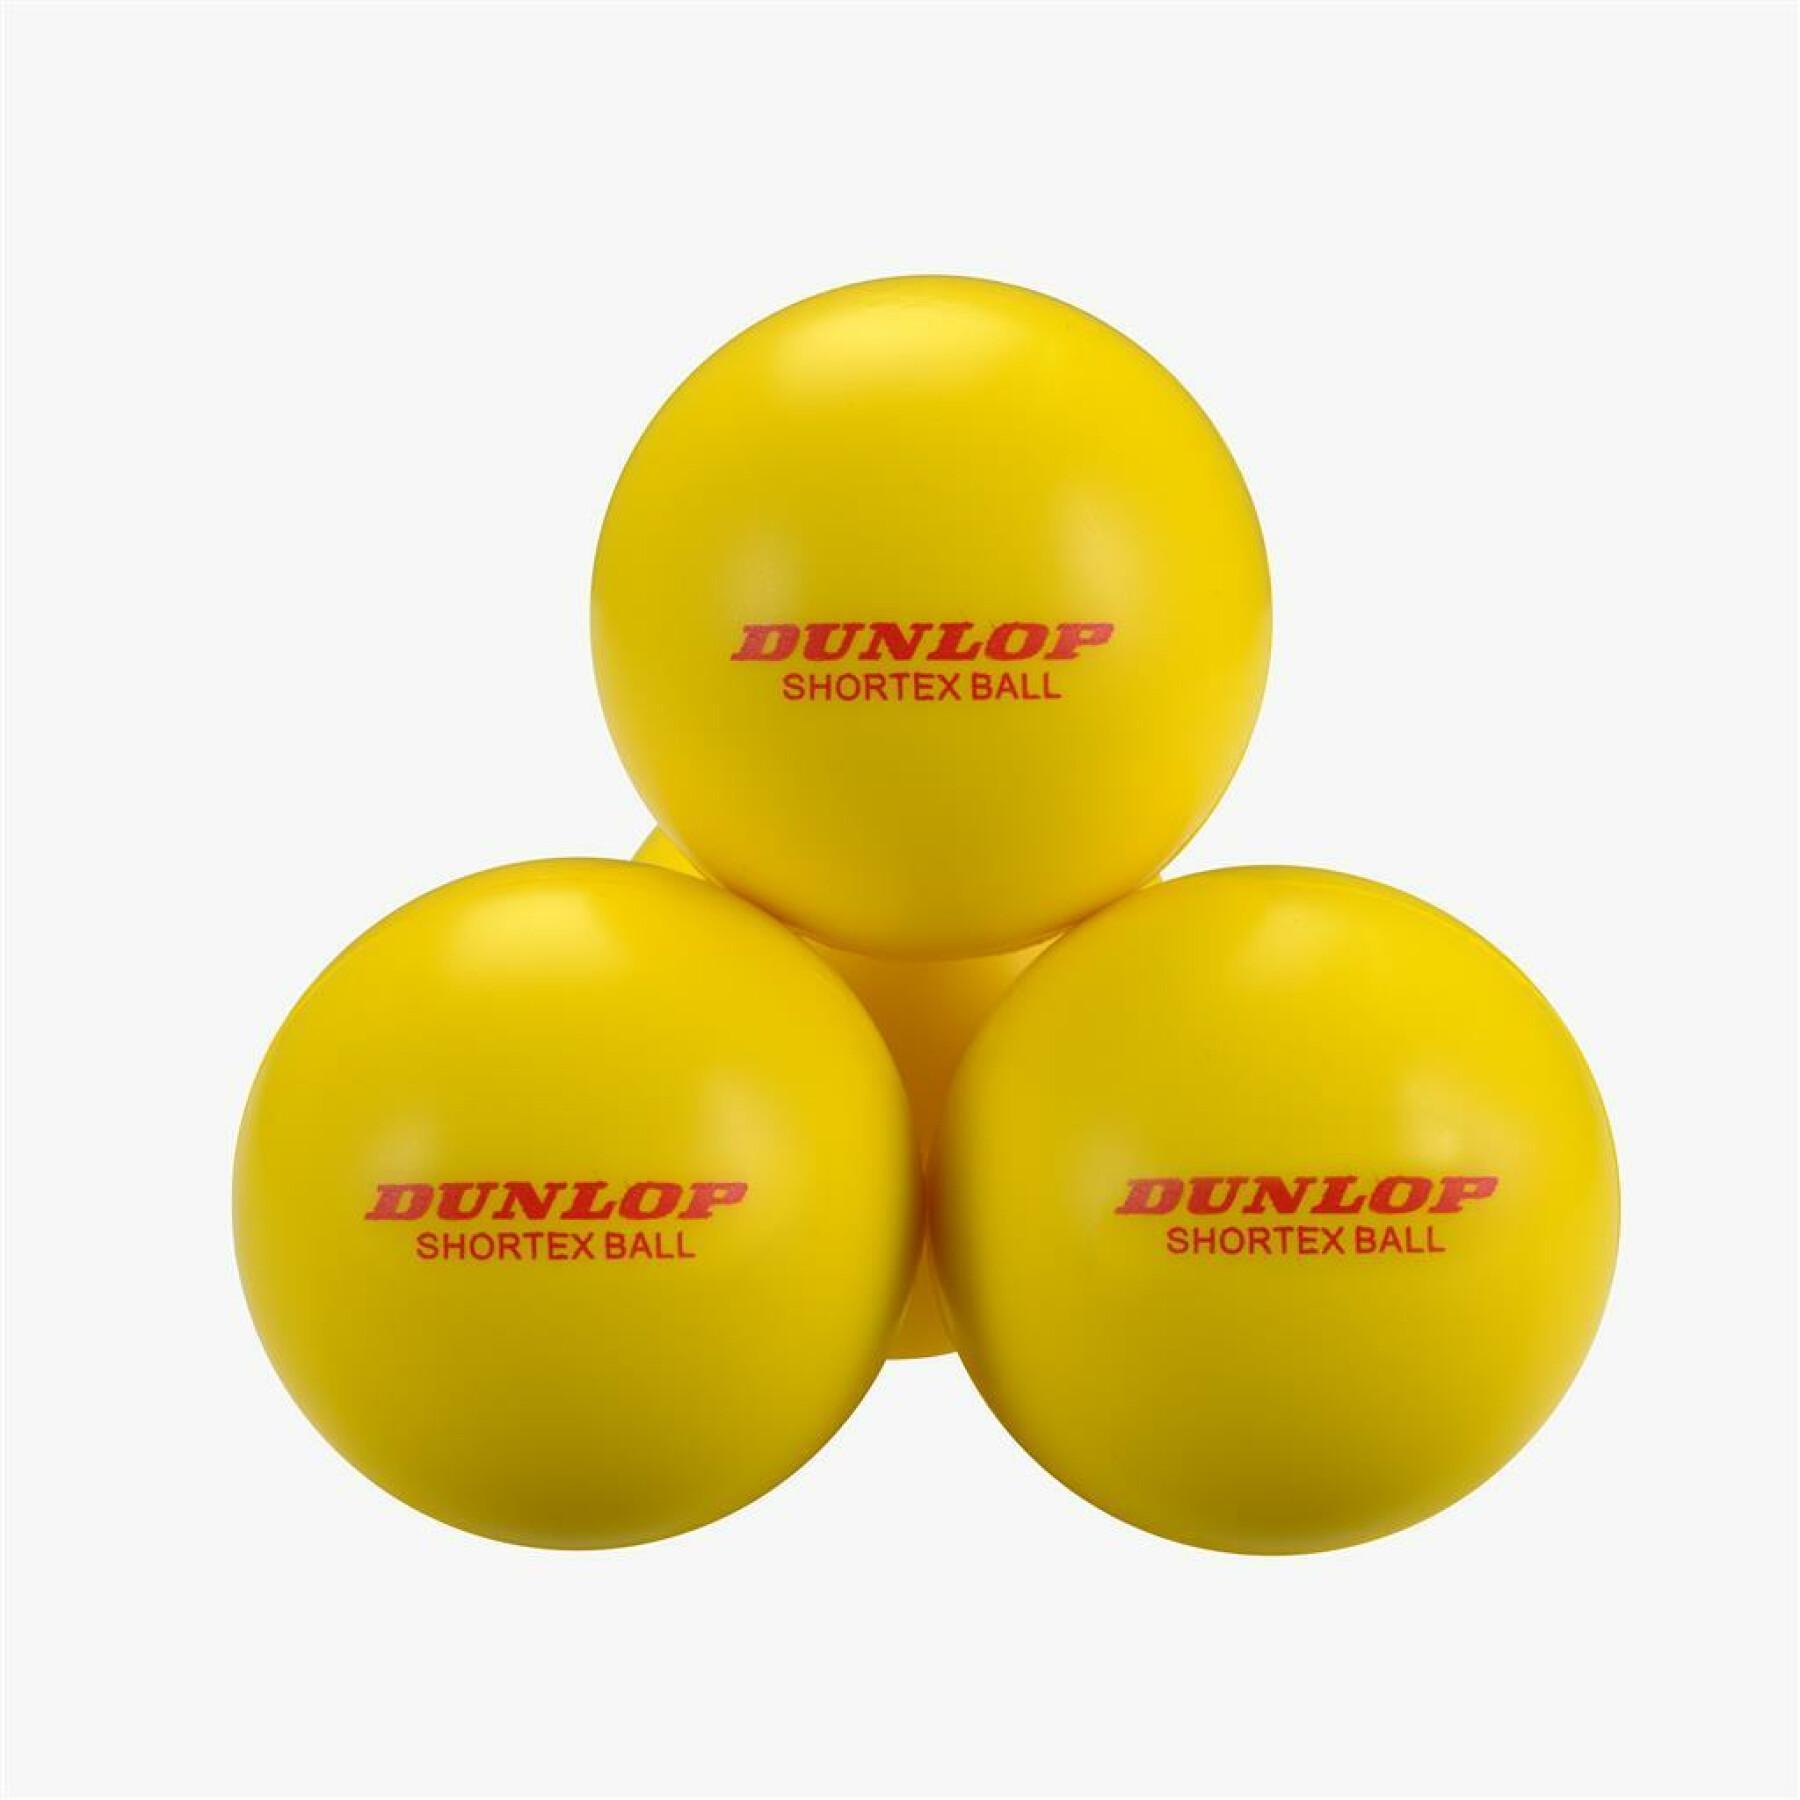 Lot of 12 tennis balls Dunlop Shortex